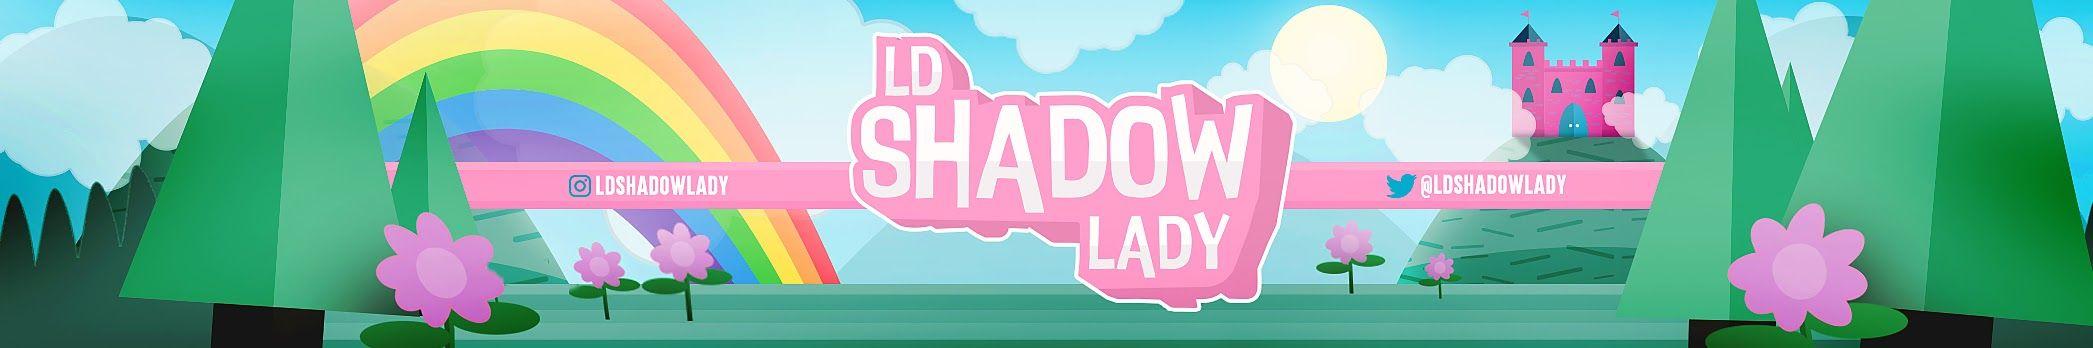 LDShadowLady Logo - LDShadowLady - YouTube